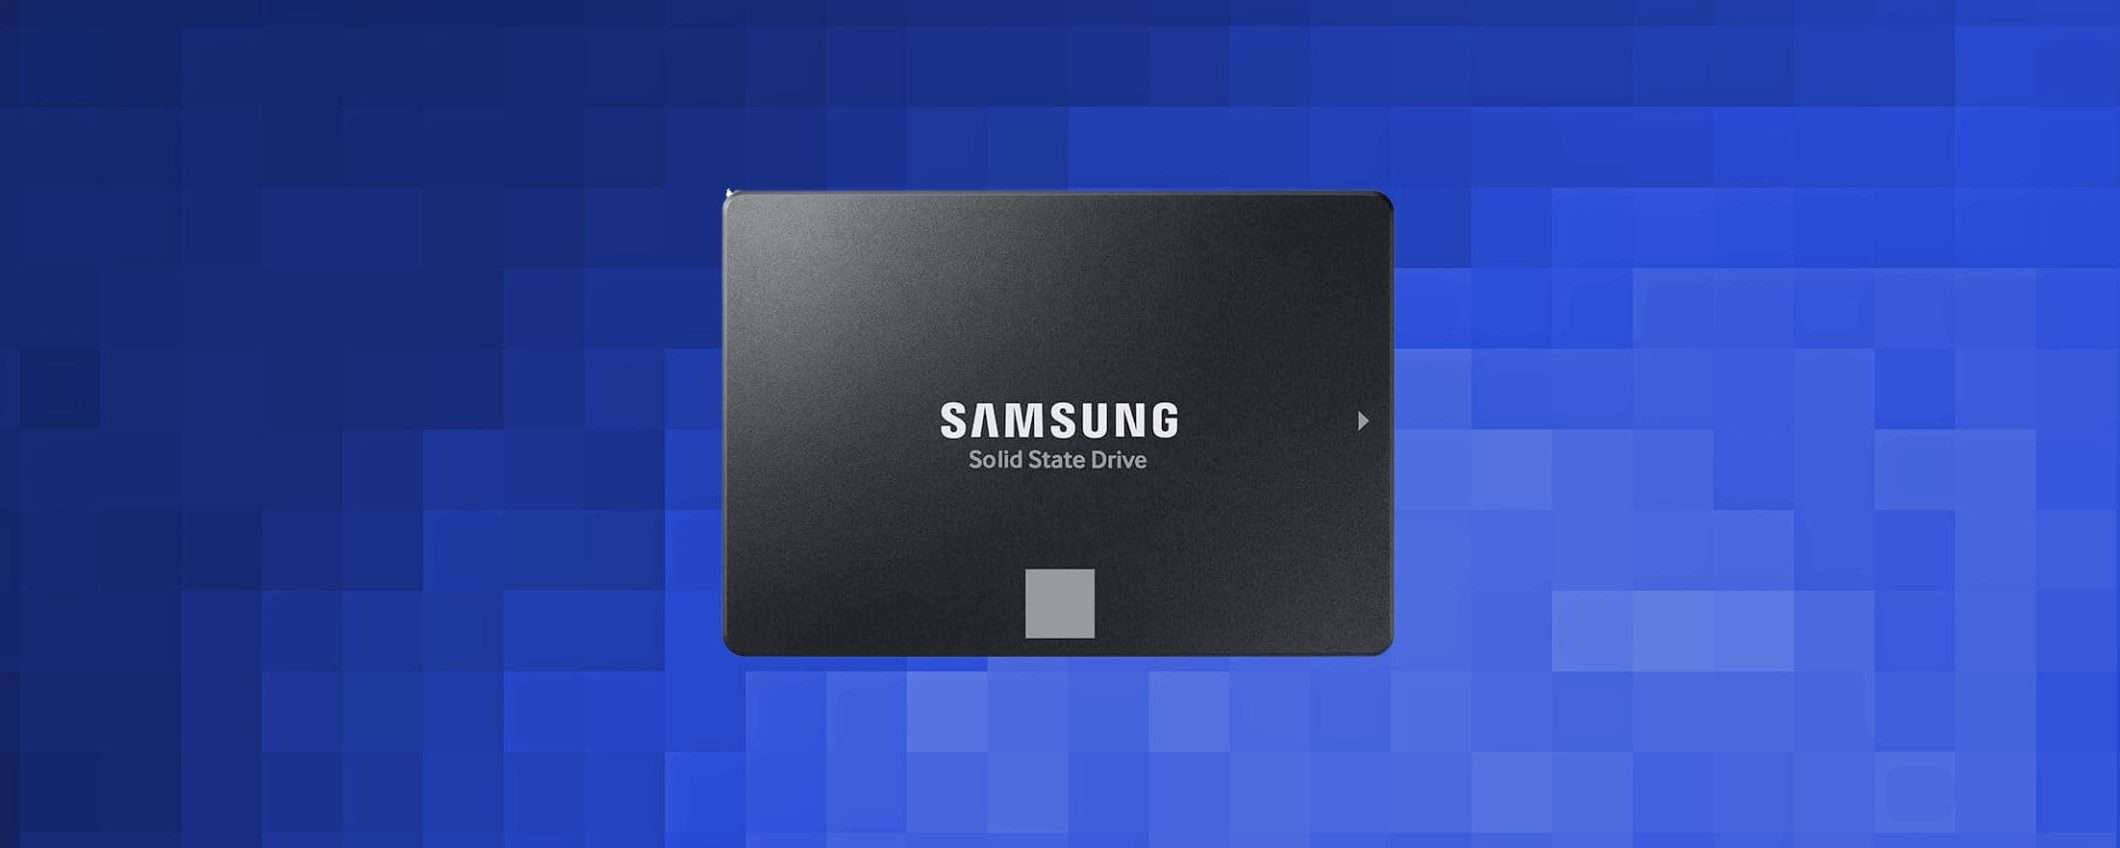 SSD SATA Samsung da 1TB in offerta al 48% di SCONTO su Amazon